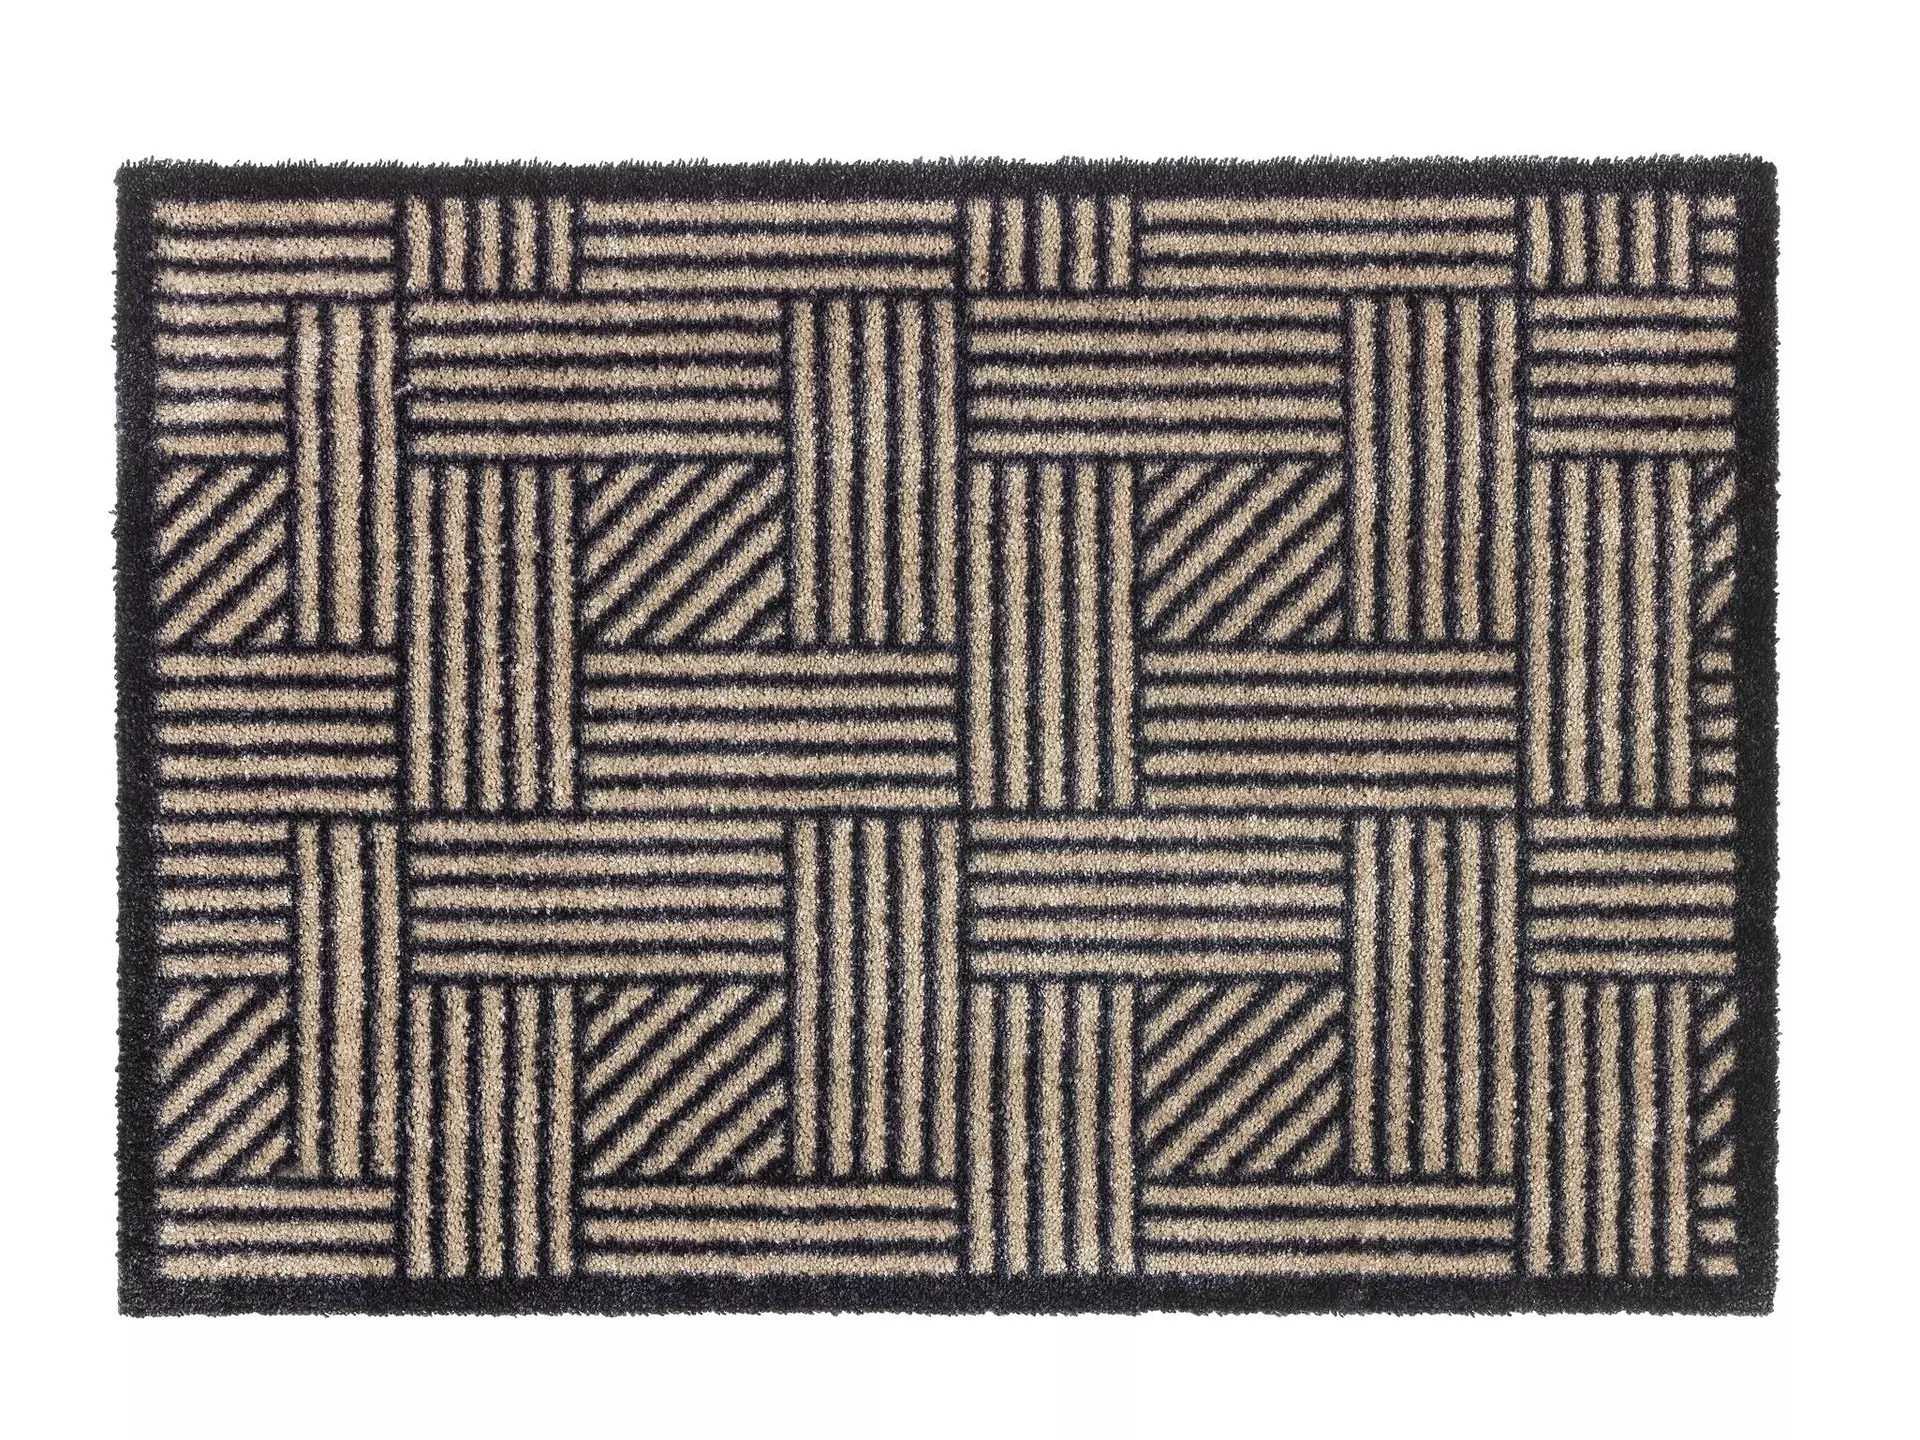 Türmatte Manhattan SCHÖNER WOHNEN-Kollektion Textil 67 x 100 cm